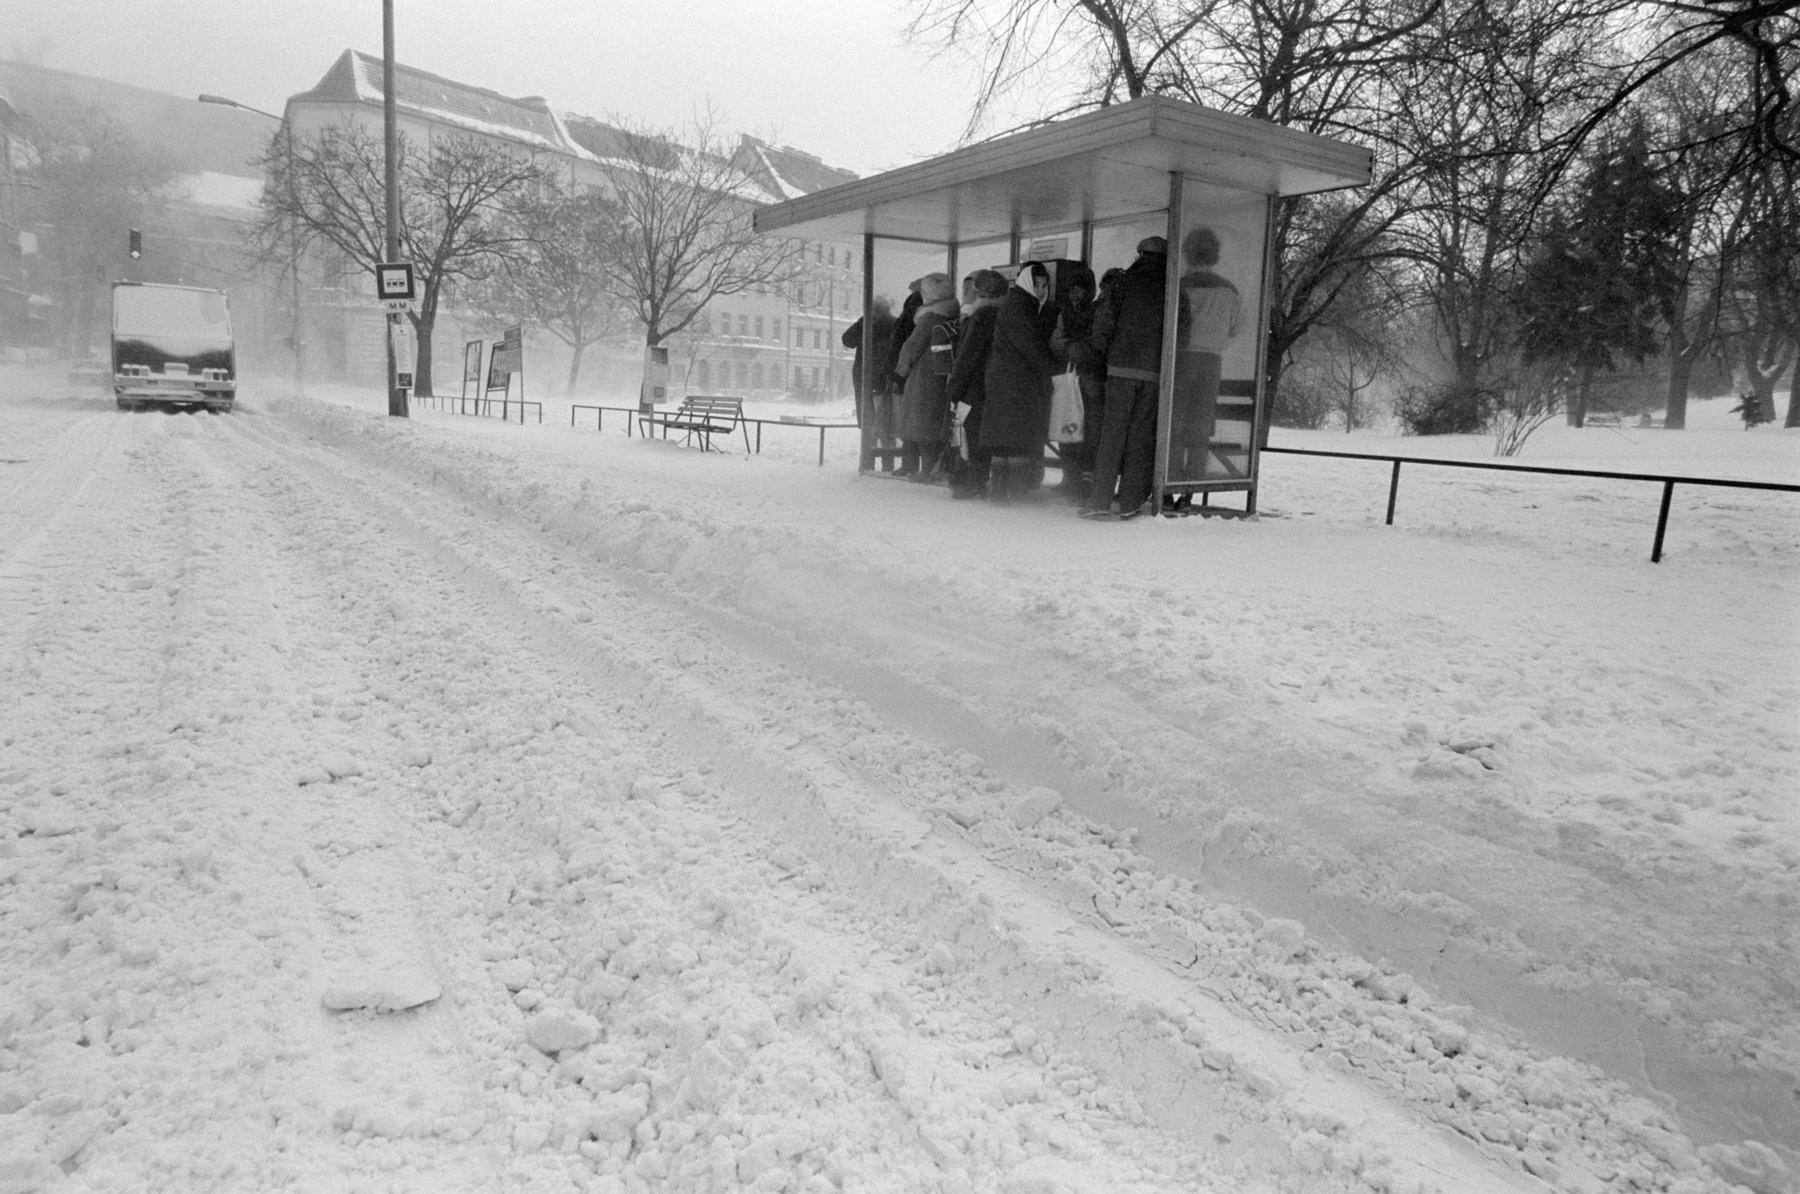 Budapest 1987. január 11.
Helyszínelõ rendőrök a fogaskerekű vasúti baleset helyszínén ahol január 11-én 20 óra 5 perckor súlyos halálos baleset történt az Orgonás megállóban. A Szabadság-hegyről a Városmajor felé közlekedő szerelvény eddig ismeretlen ok miatt nem tudott megállni és összeütközött az Orgonás megállóban várakozó felfelé közlekedő vonattal. Az ütközés következtében az álló szerelvény utolsó kocsija leszakadt és a városmajori végállomáson kötött ki. A késõ éjszakai órákig tartó vizsgálat  megállapításai szerint a baleset következtében ketten életüket vesztették hárman súlyos öten könnyû sérülést szenvedtek. A baleset körülményeinek vizsgálatát a rendőrség szakértõk bevonásával folytatja.